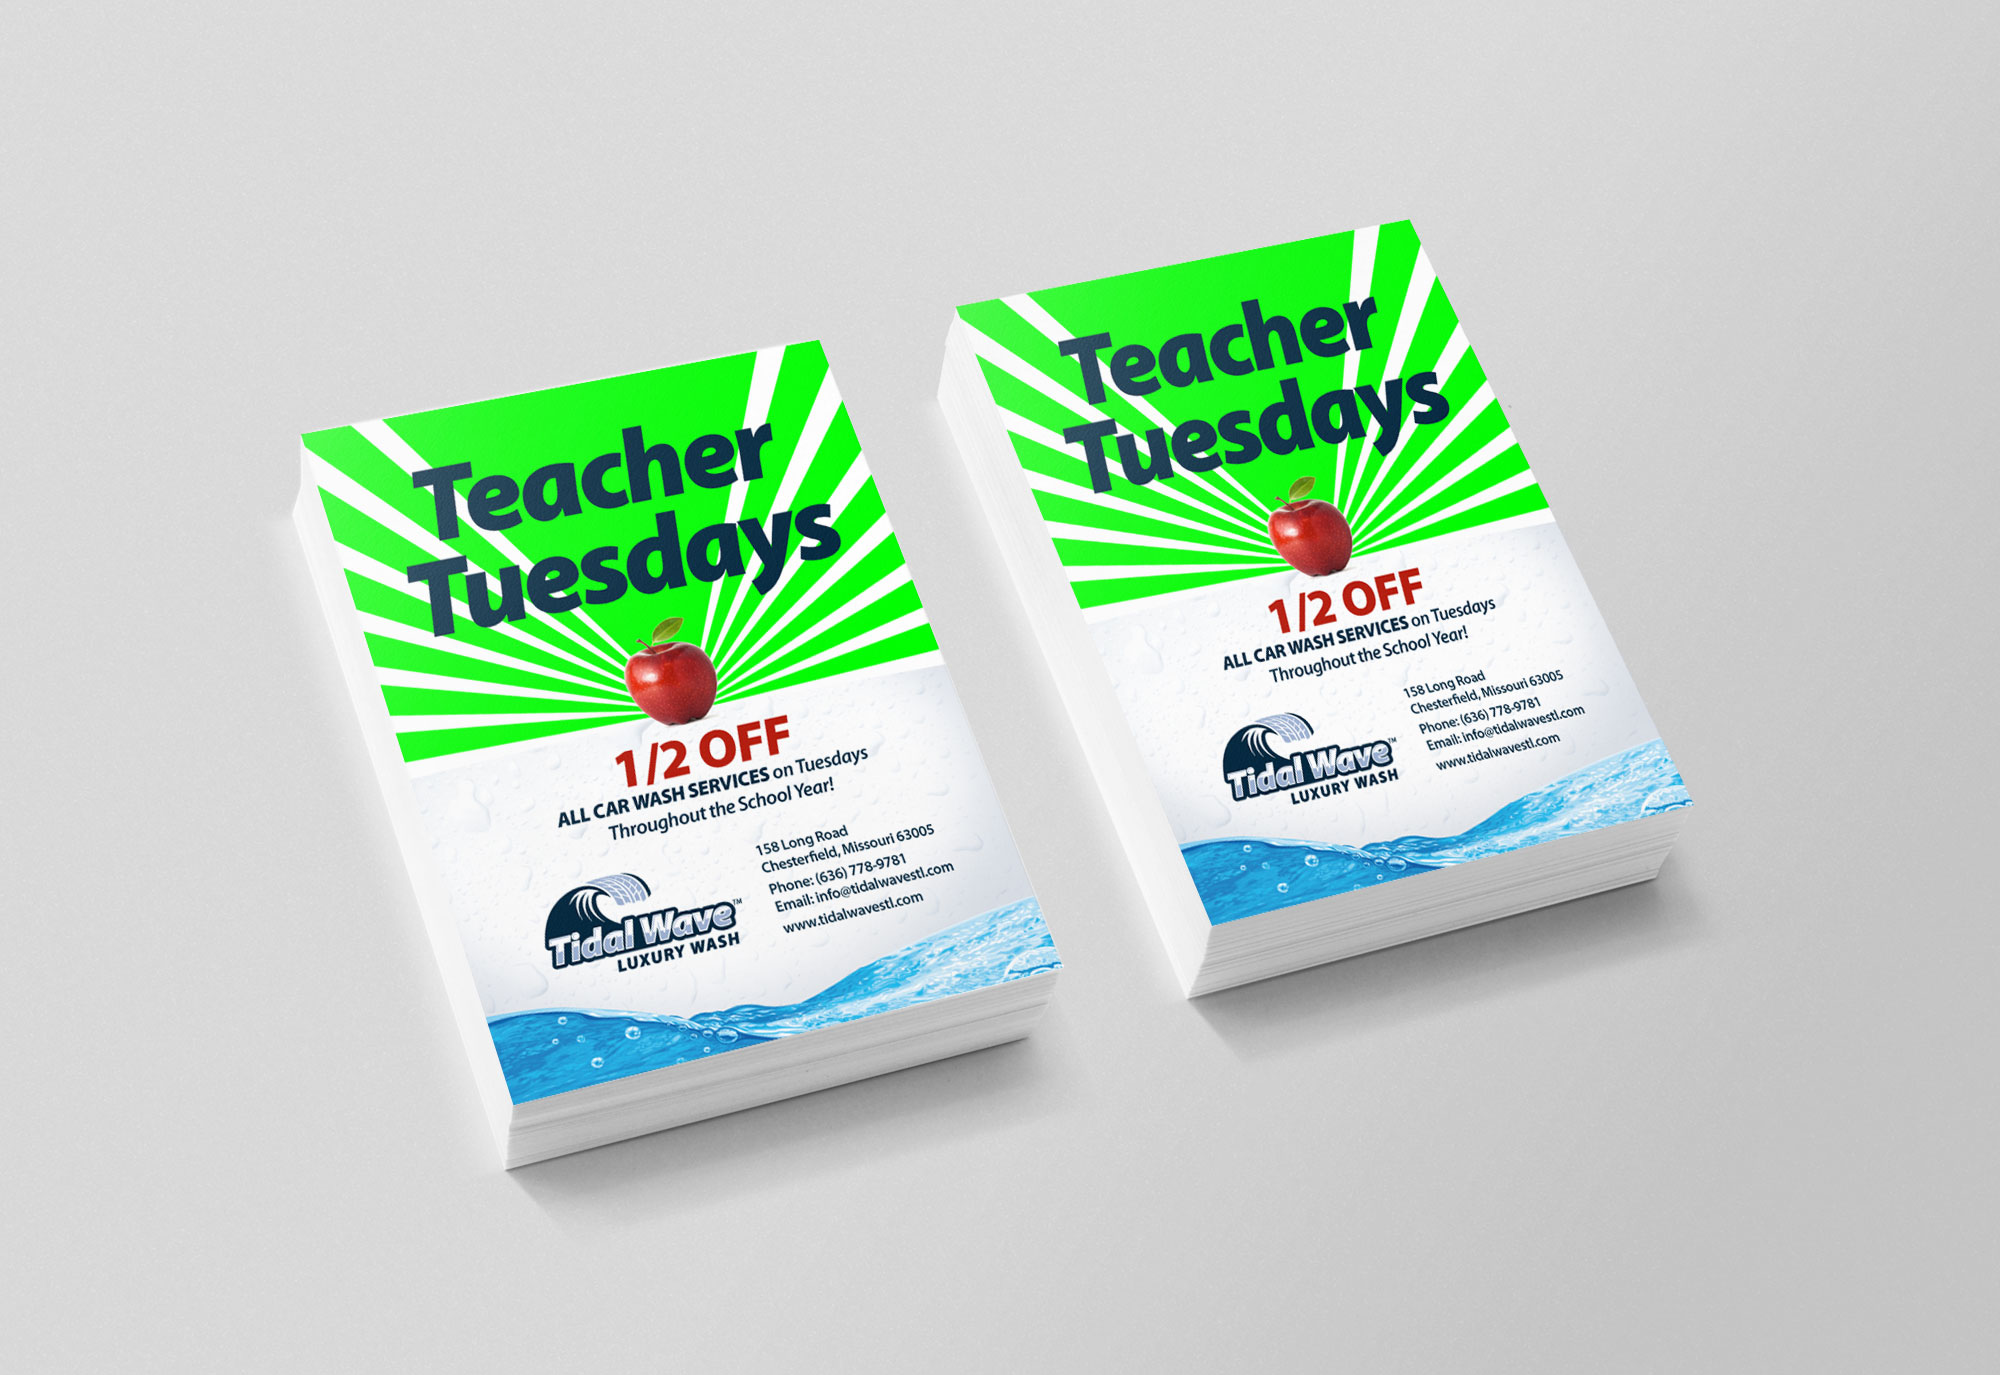 Tidal Teacher Flyer Design